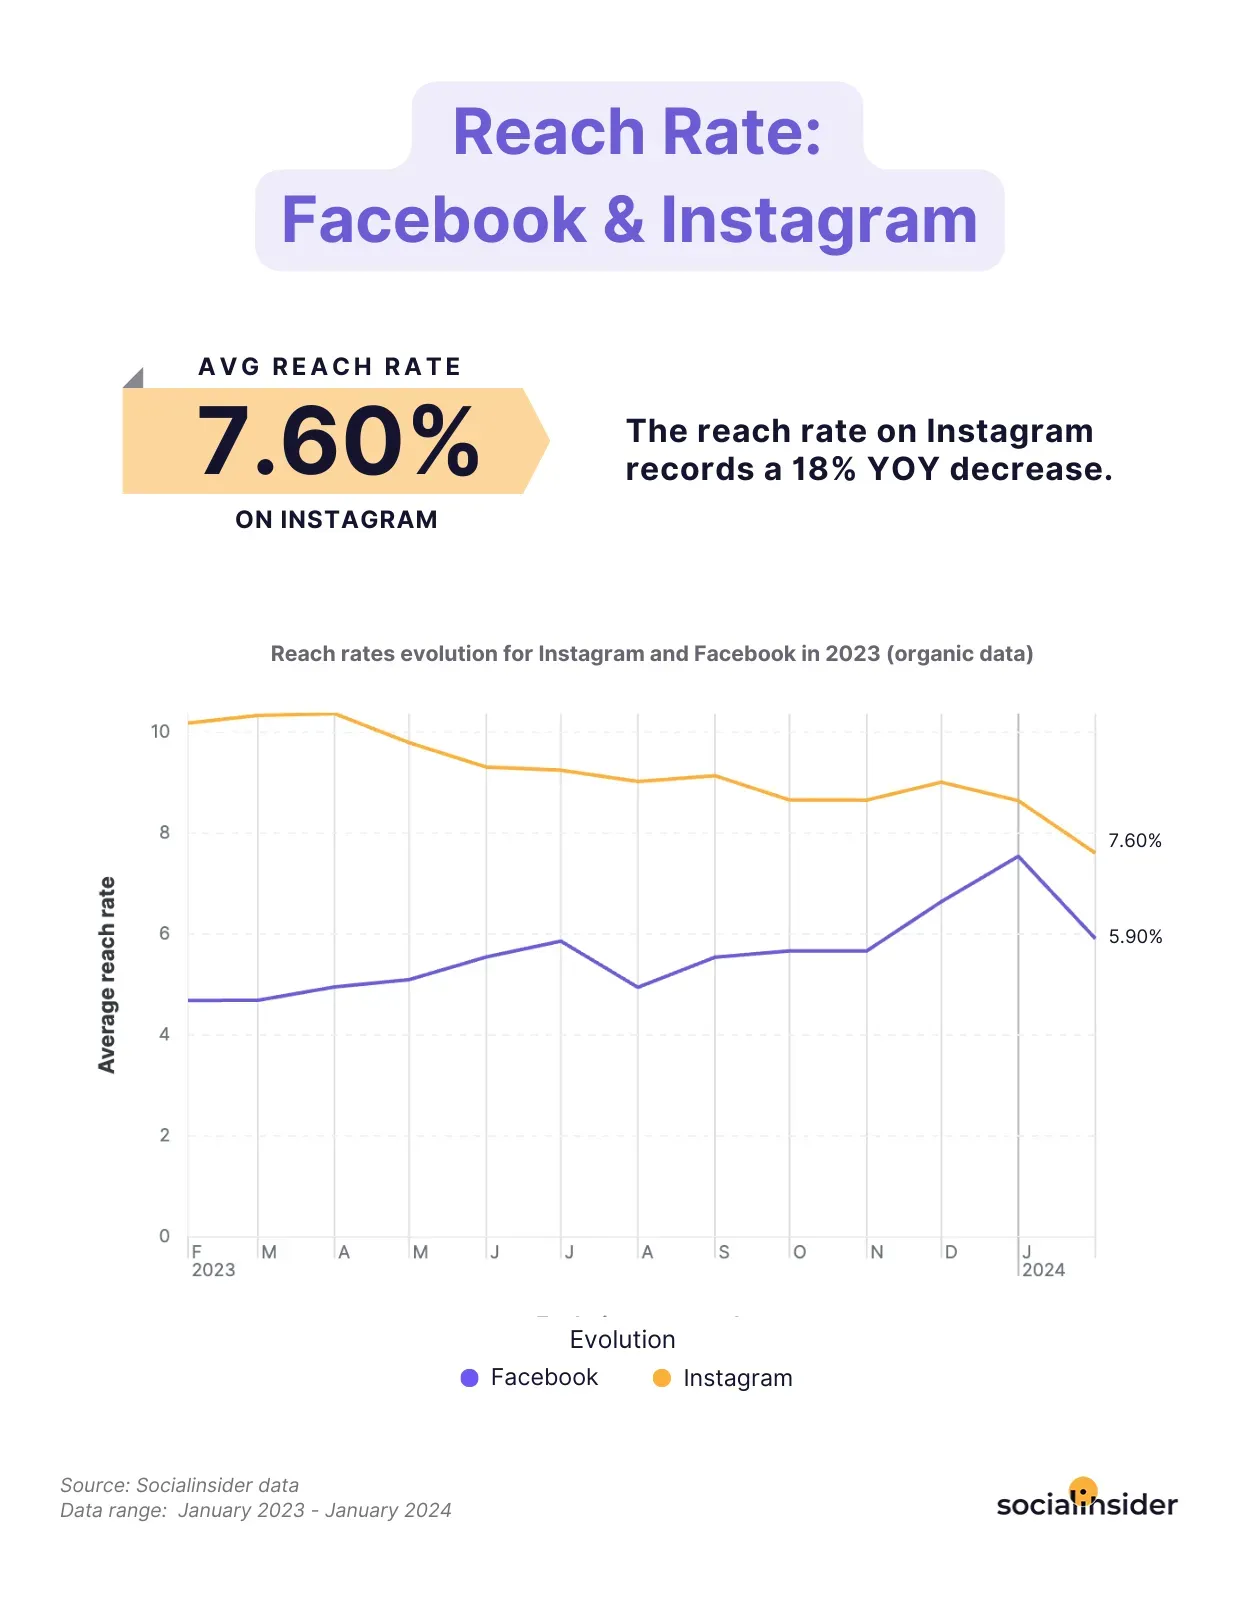 Reach on Instagram is decreasing